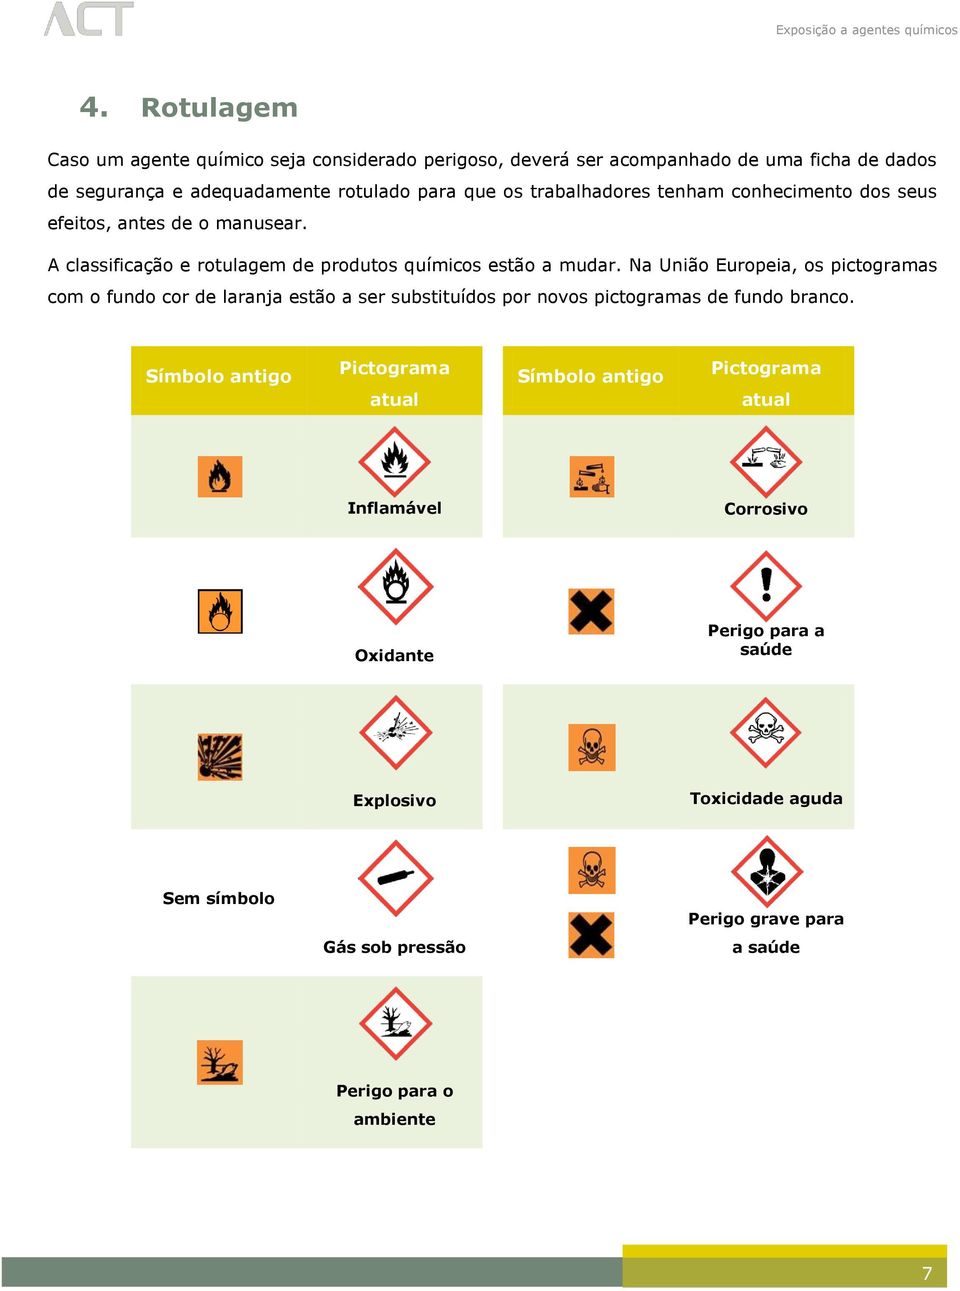 Na União Europeia, os pictogramas com o fundo cor de laranja estão a ser substituídos por novos pictogramas de fundo branco.